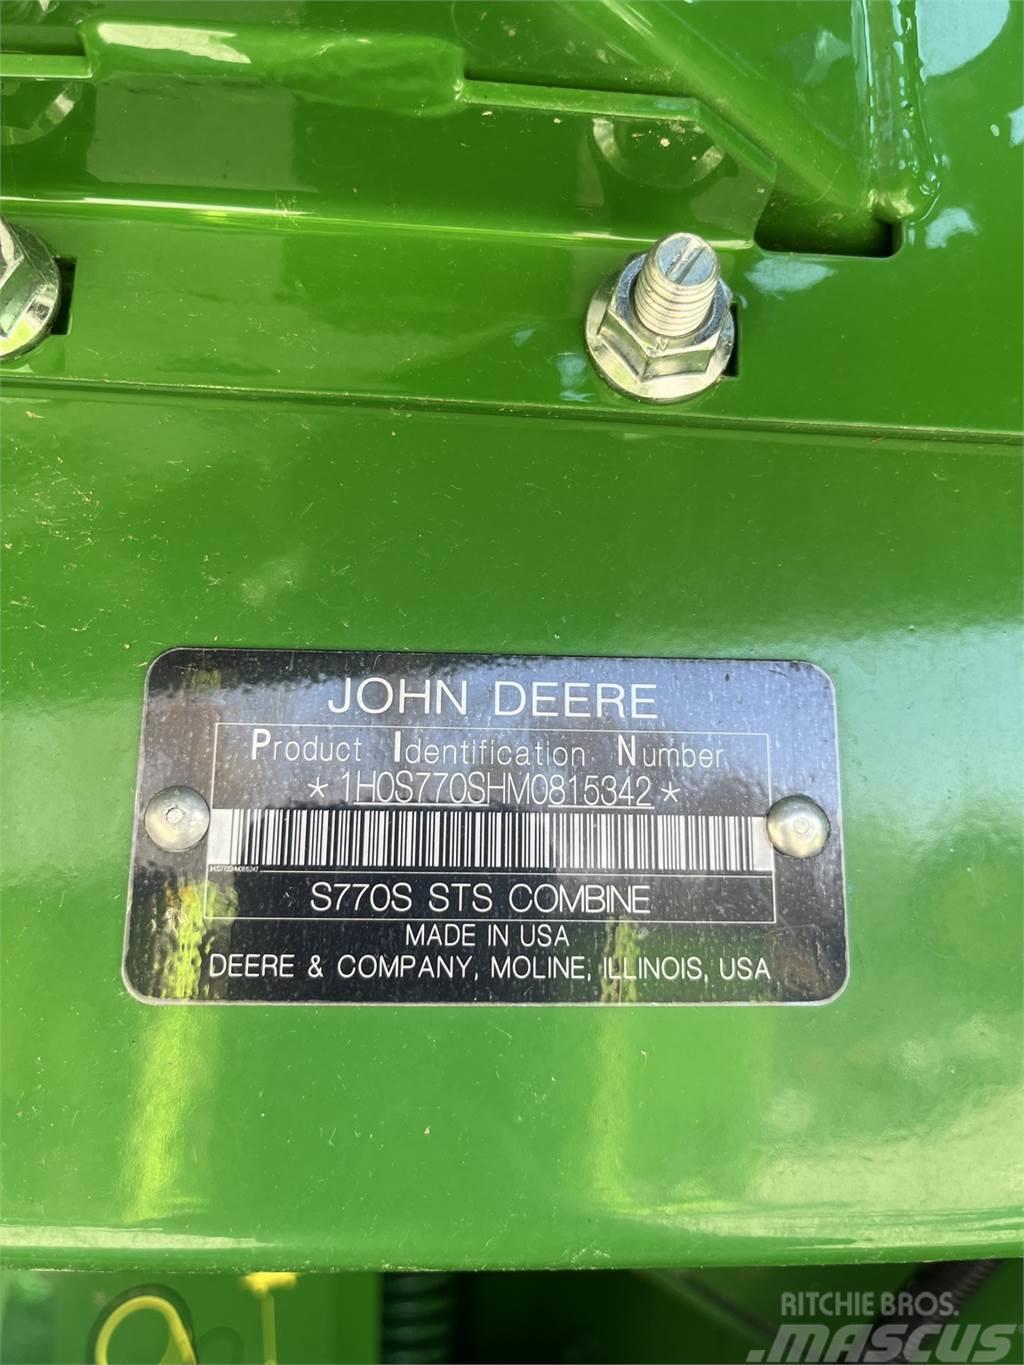 John Deere S770 Sklízecí mlátičky